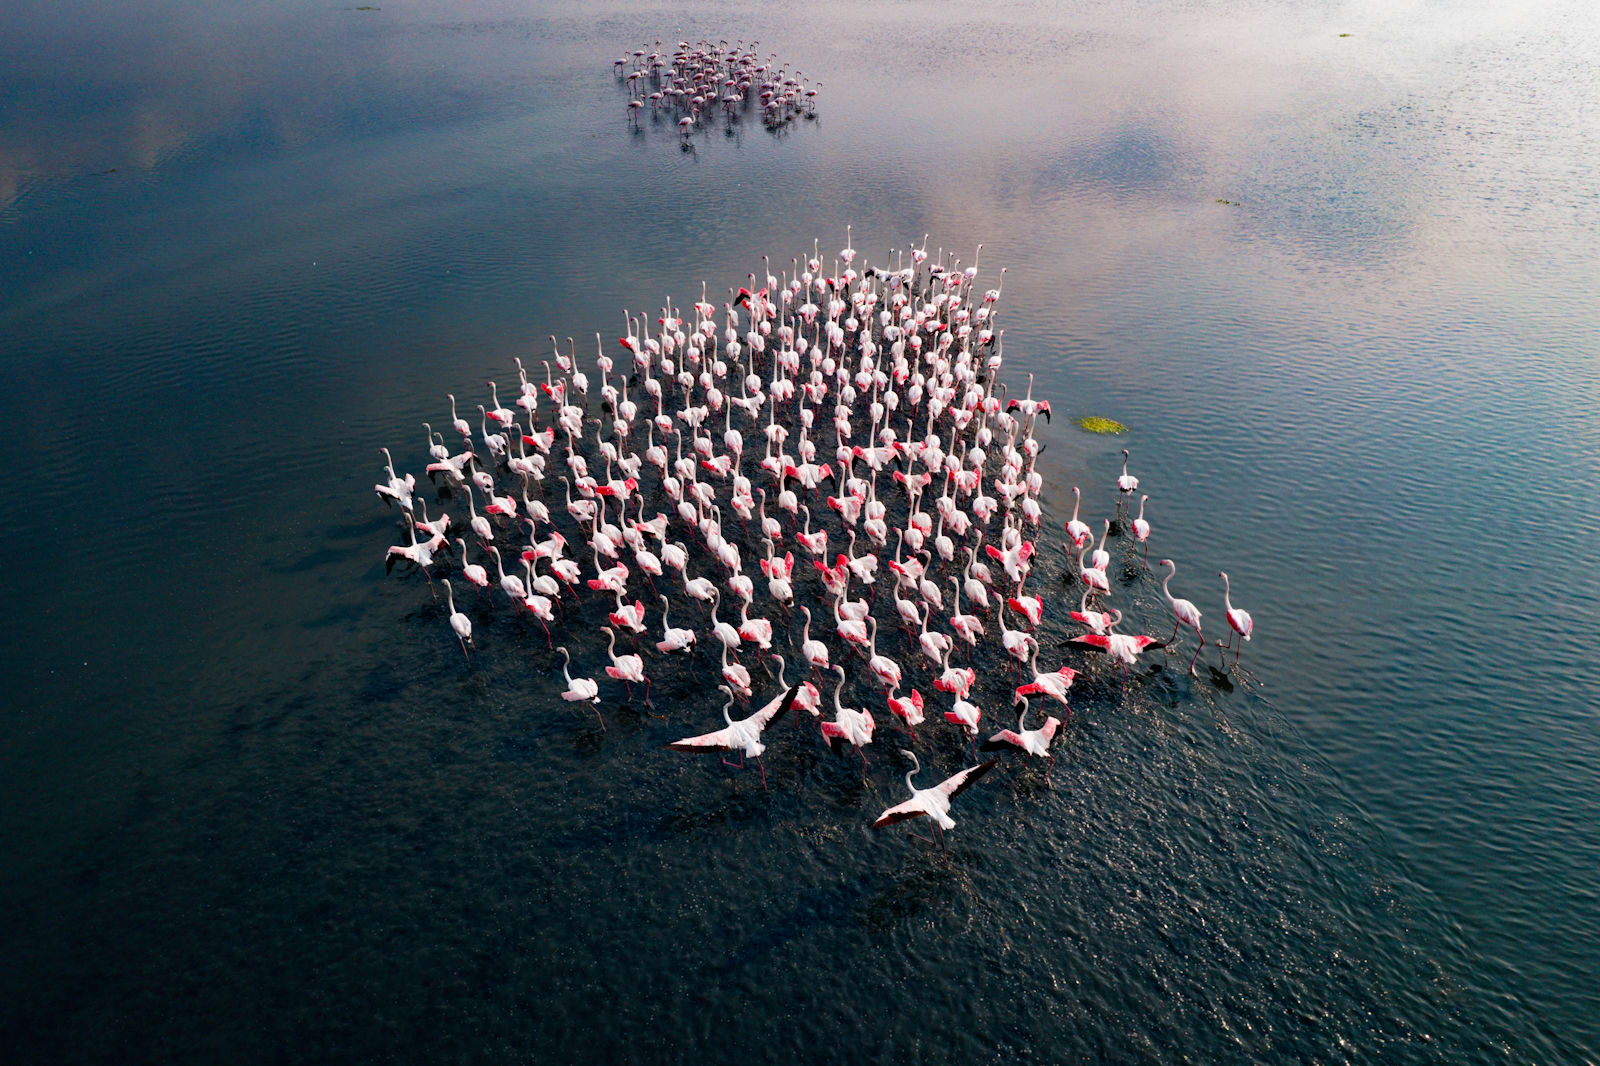 Fotograf dokumentiert "Rosa Armee" Blickfang in einem indischen See